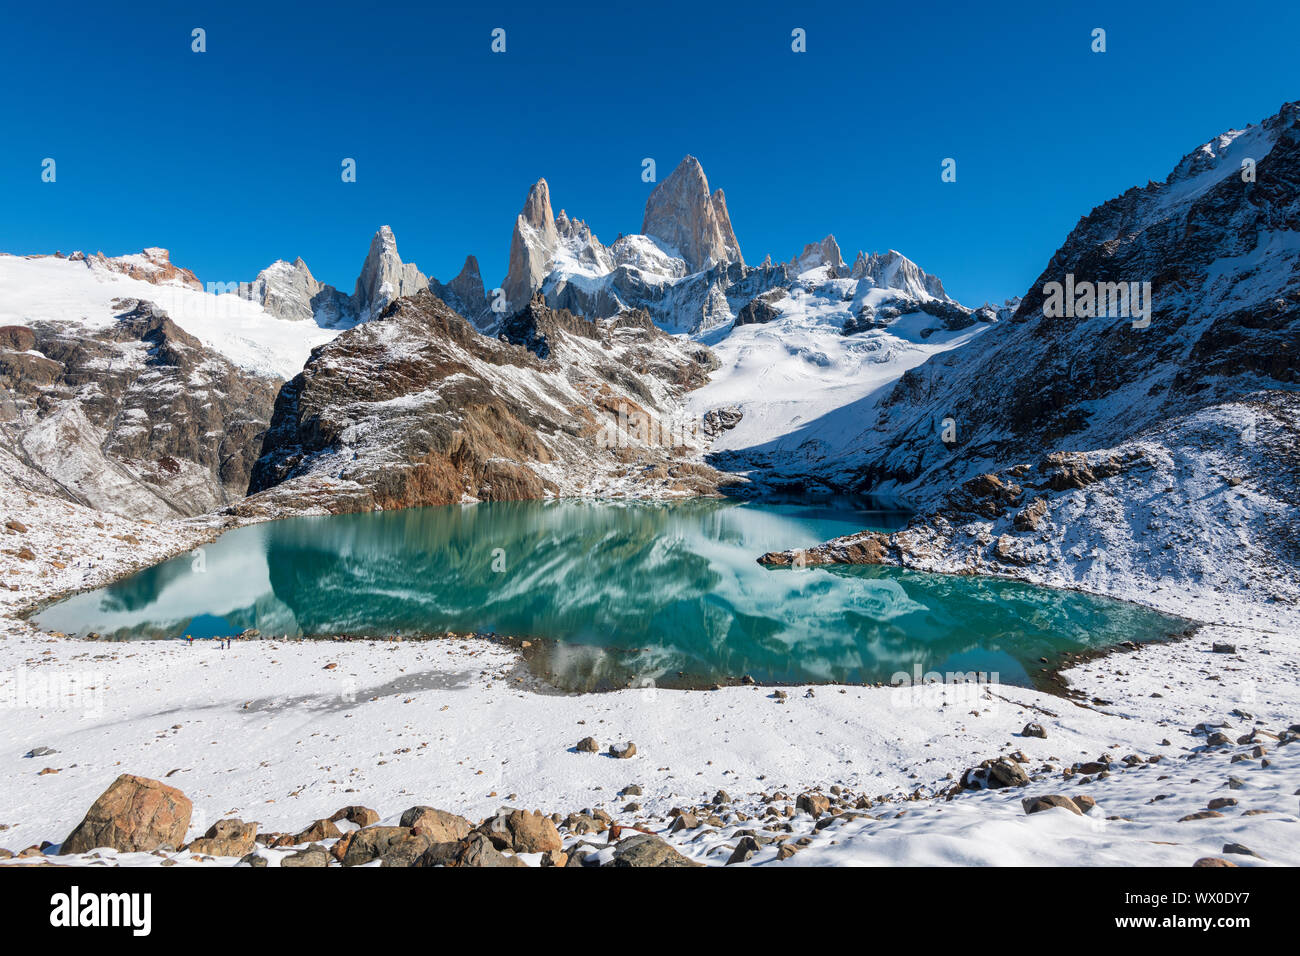 Mount Fitz Roy with covering of snow, Lago de los Tres (Laguna de los Tres), El Chalten, Los Glaciares National Park, UNESCO, Patagonia, Argentina Stock Photo